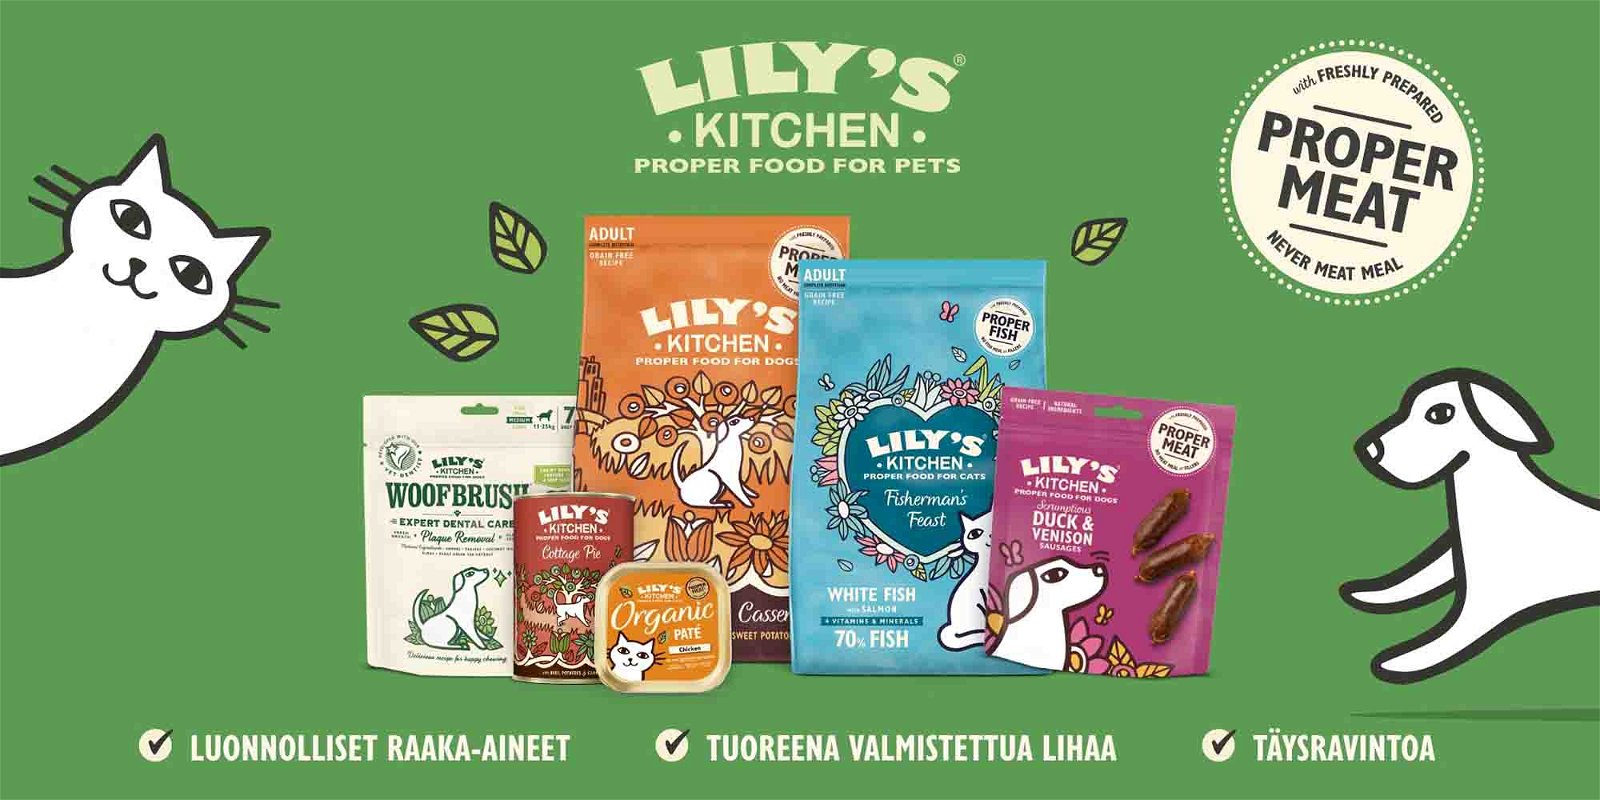 Lilys Kitchen